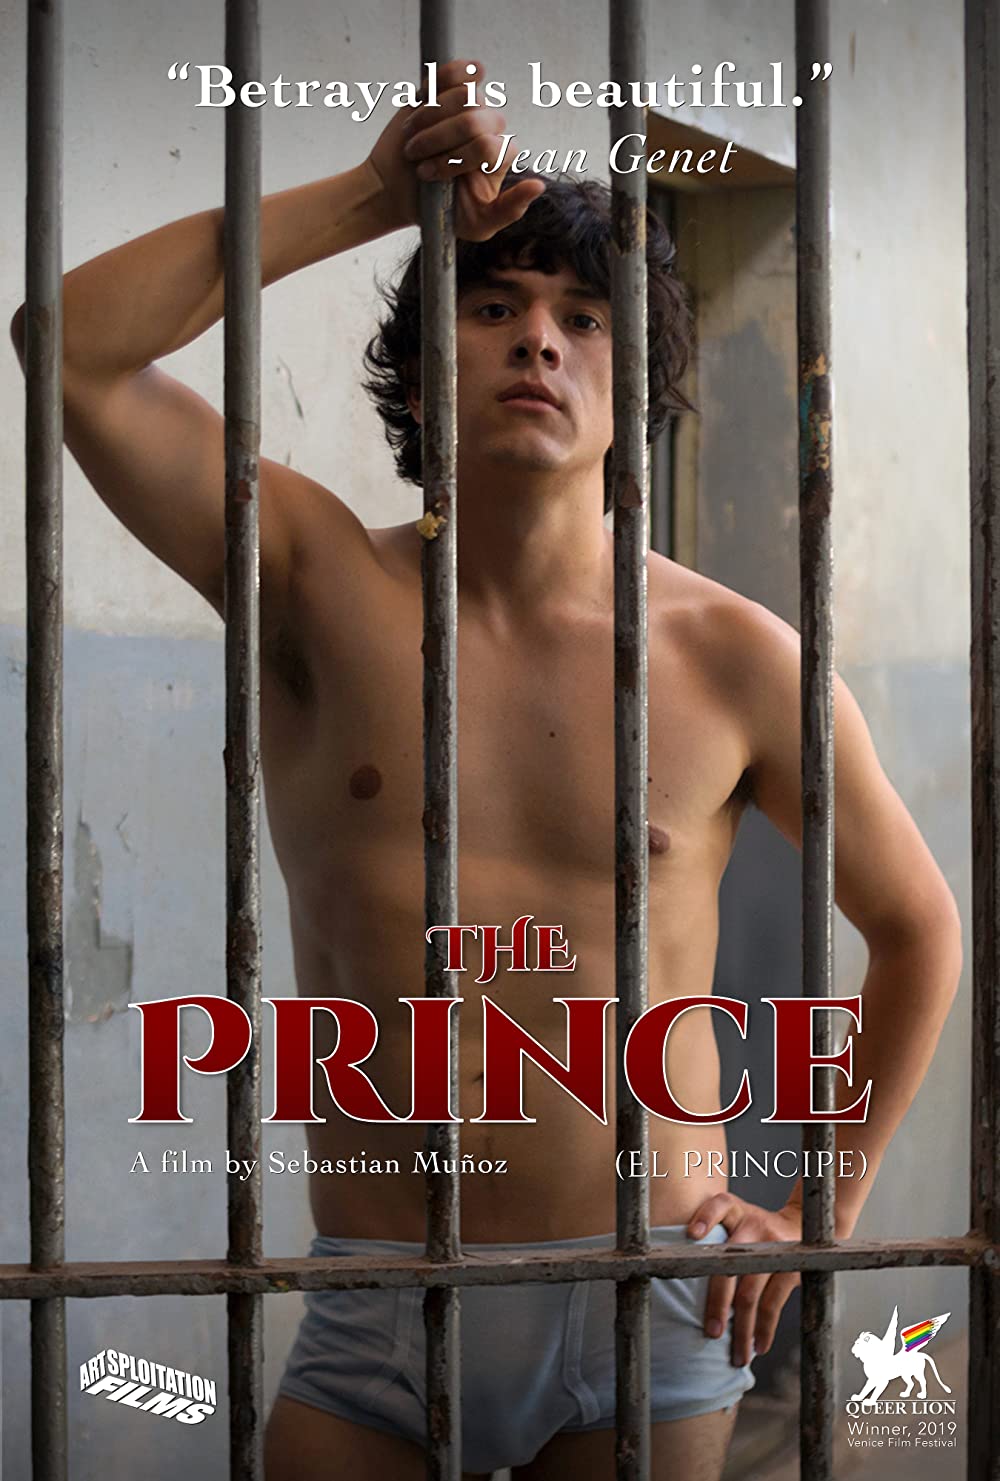 Filmbeschreibung zu Der Prinz